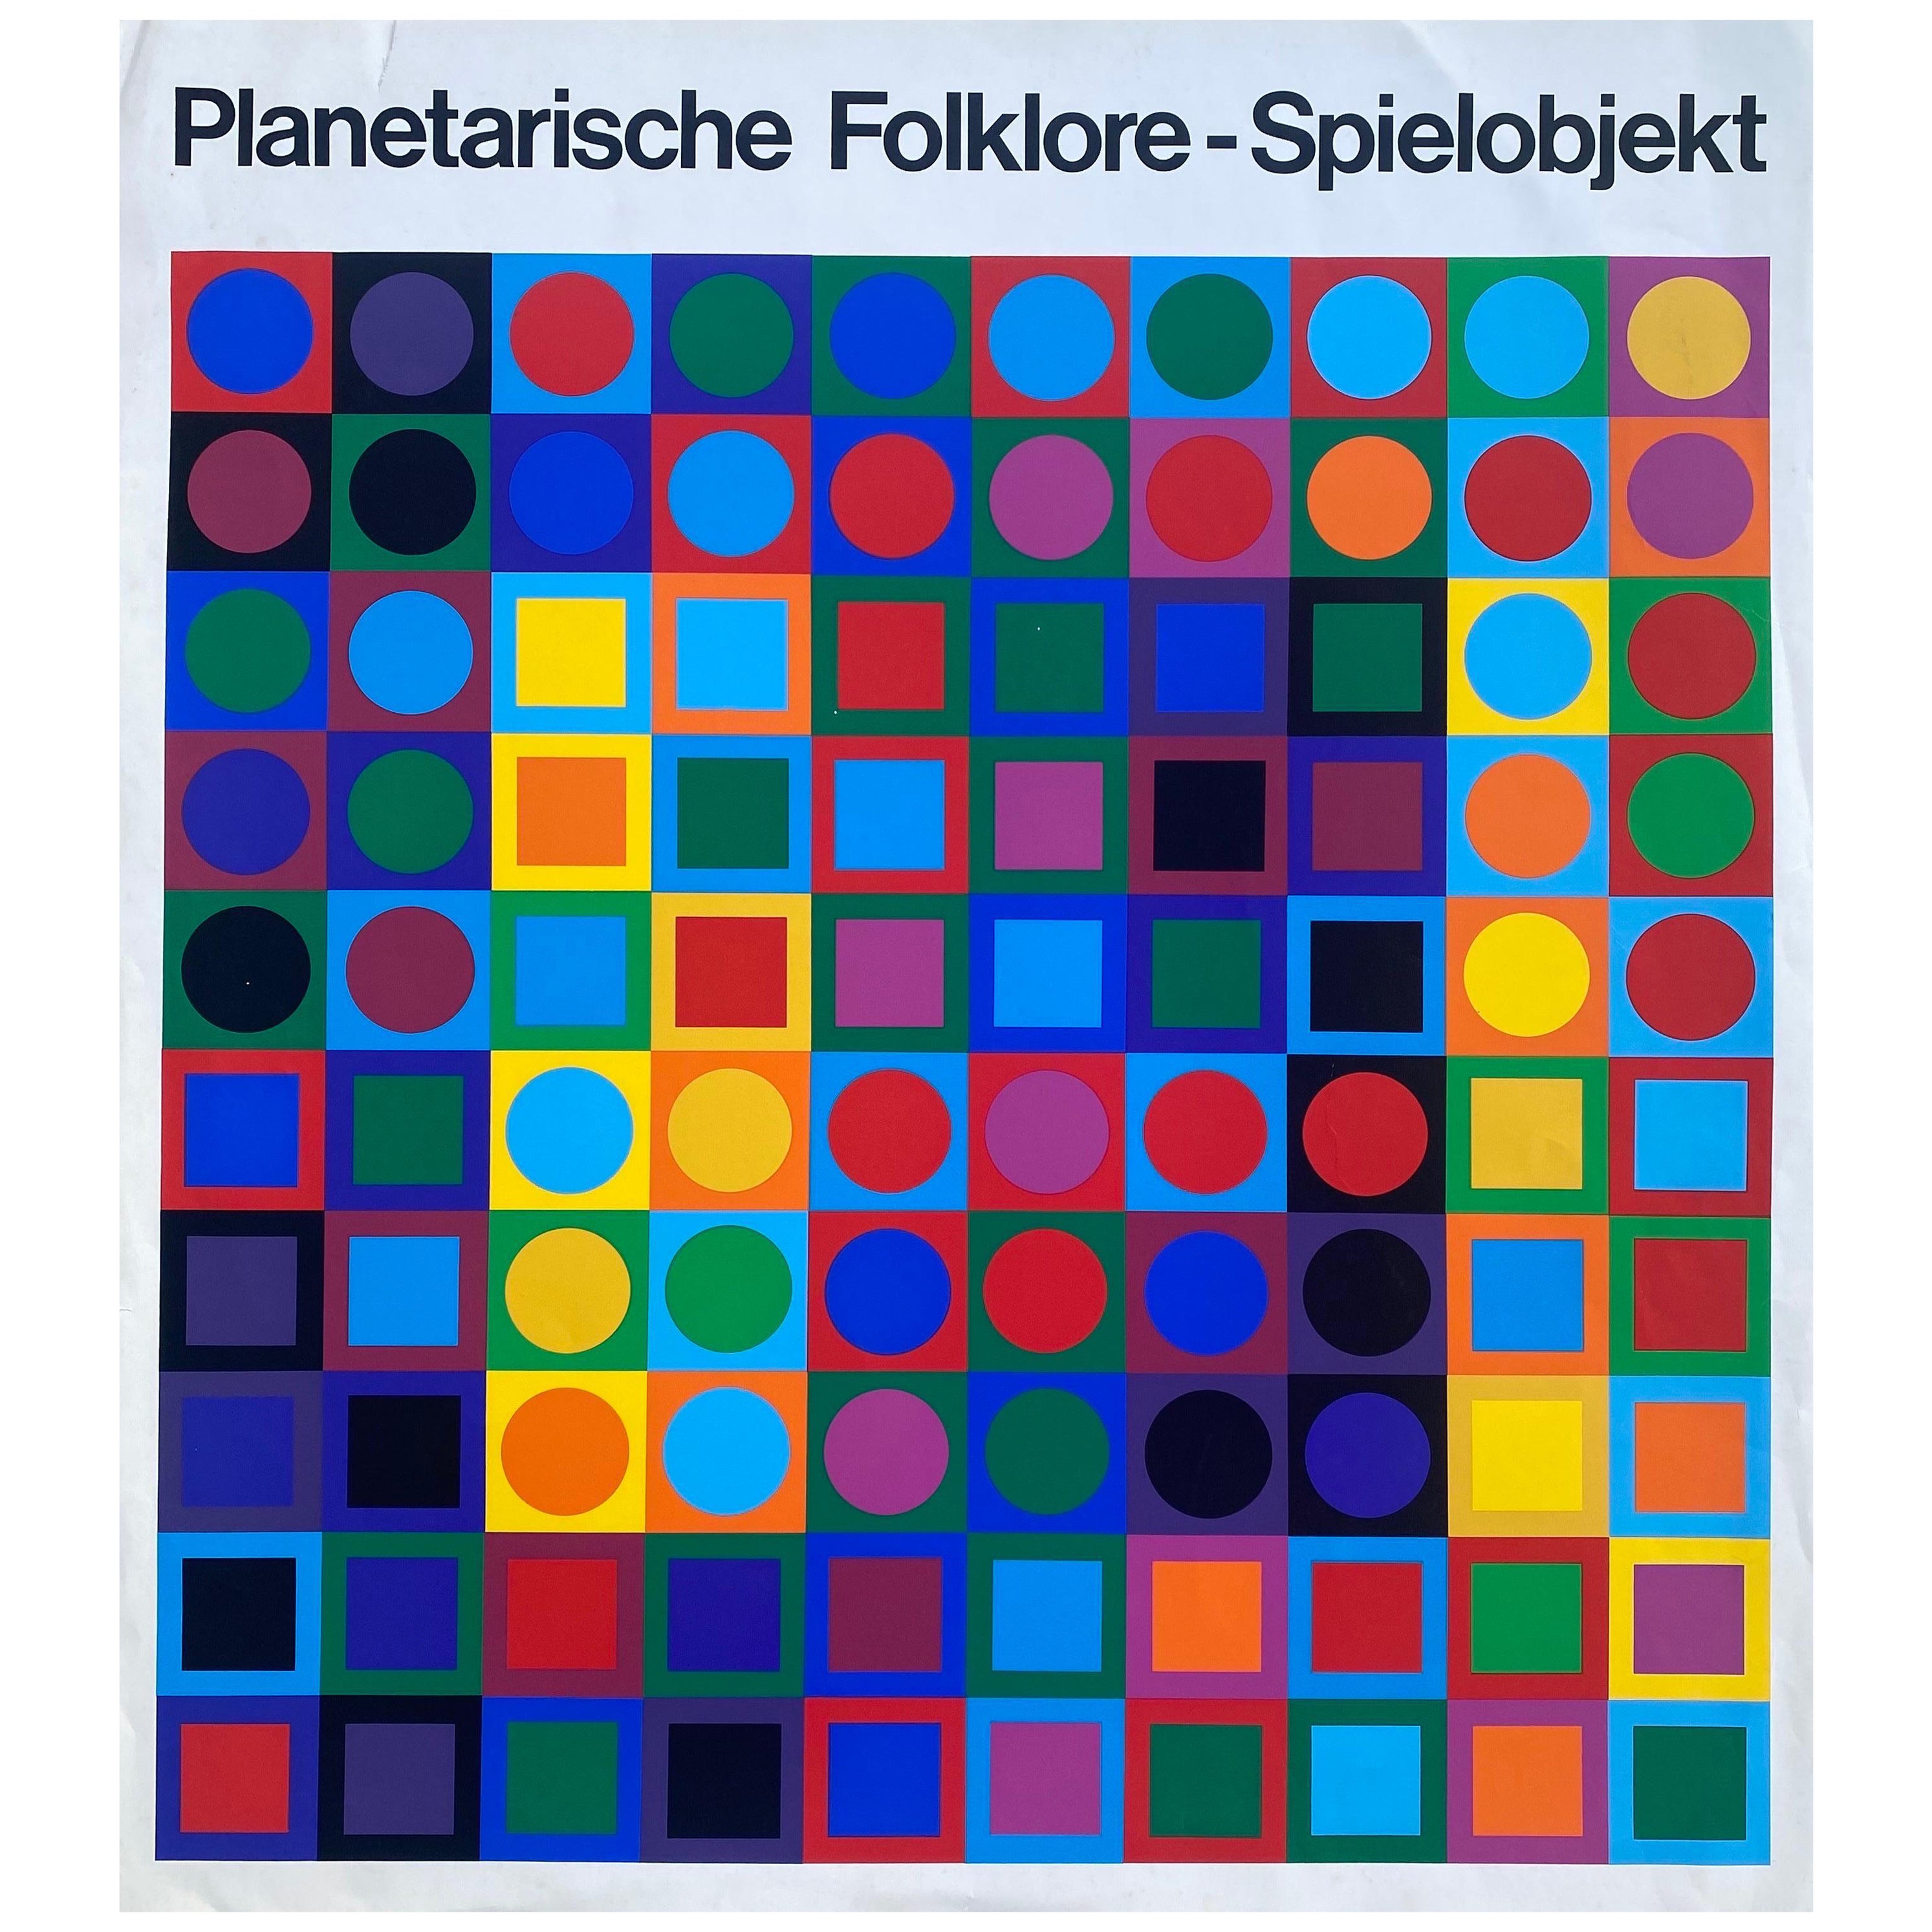 Circa 1969 "Planetarische Folklore - Spielobjekt" (After) Victor Vasarely 